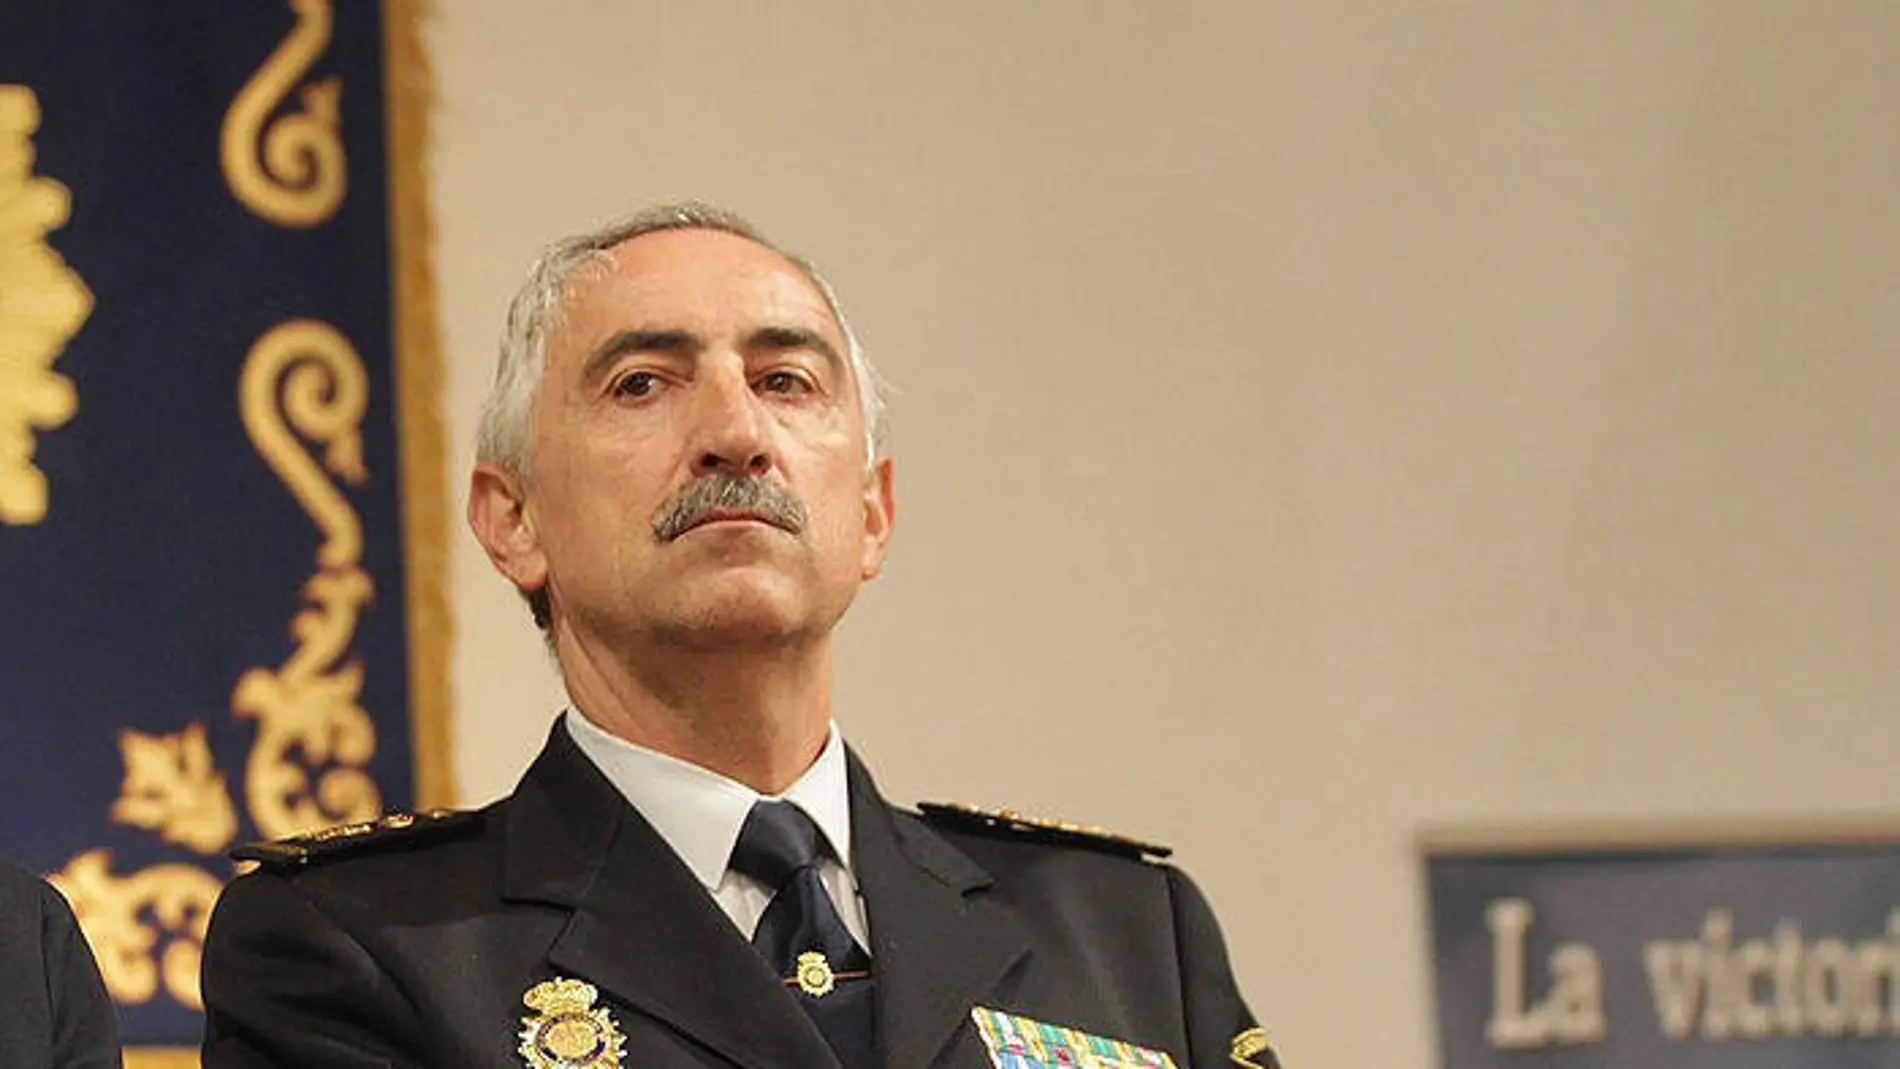 El jefe superior del Cuerpo Nacional de Policía en Navarra, Daniel Rodríguez López